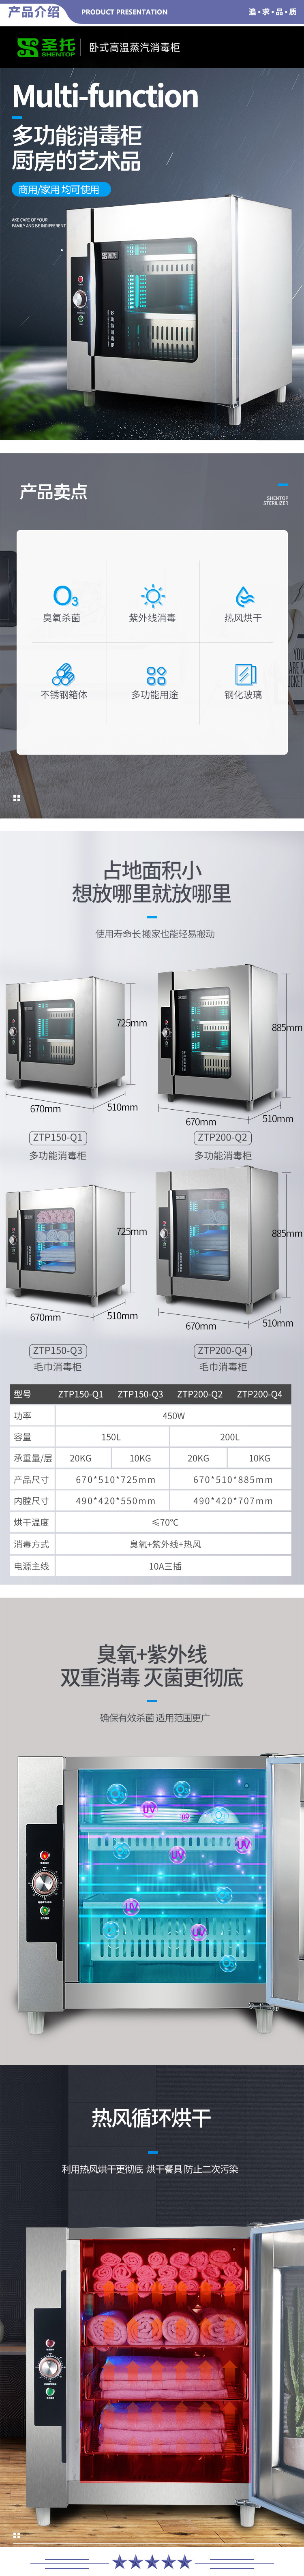 圣托（Shentop） ZTP150-Q1 餐具消毒柜立式 热风循环烘干保洁柜 紫外线多功能办公室茶杯柜 2.jpg